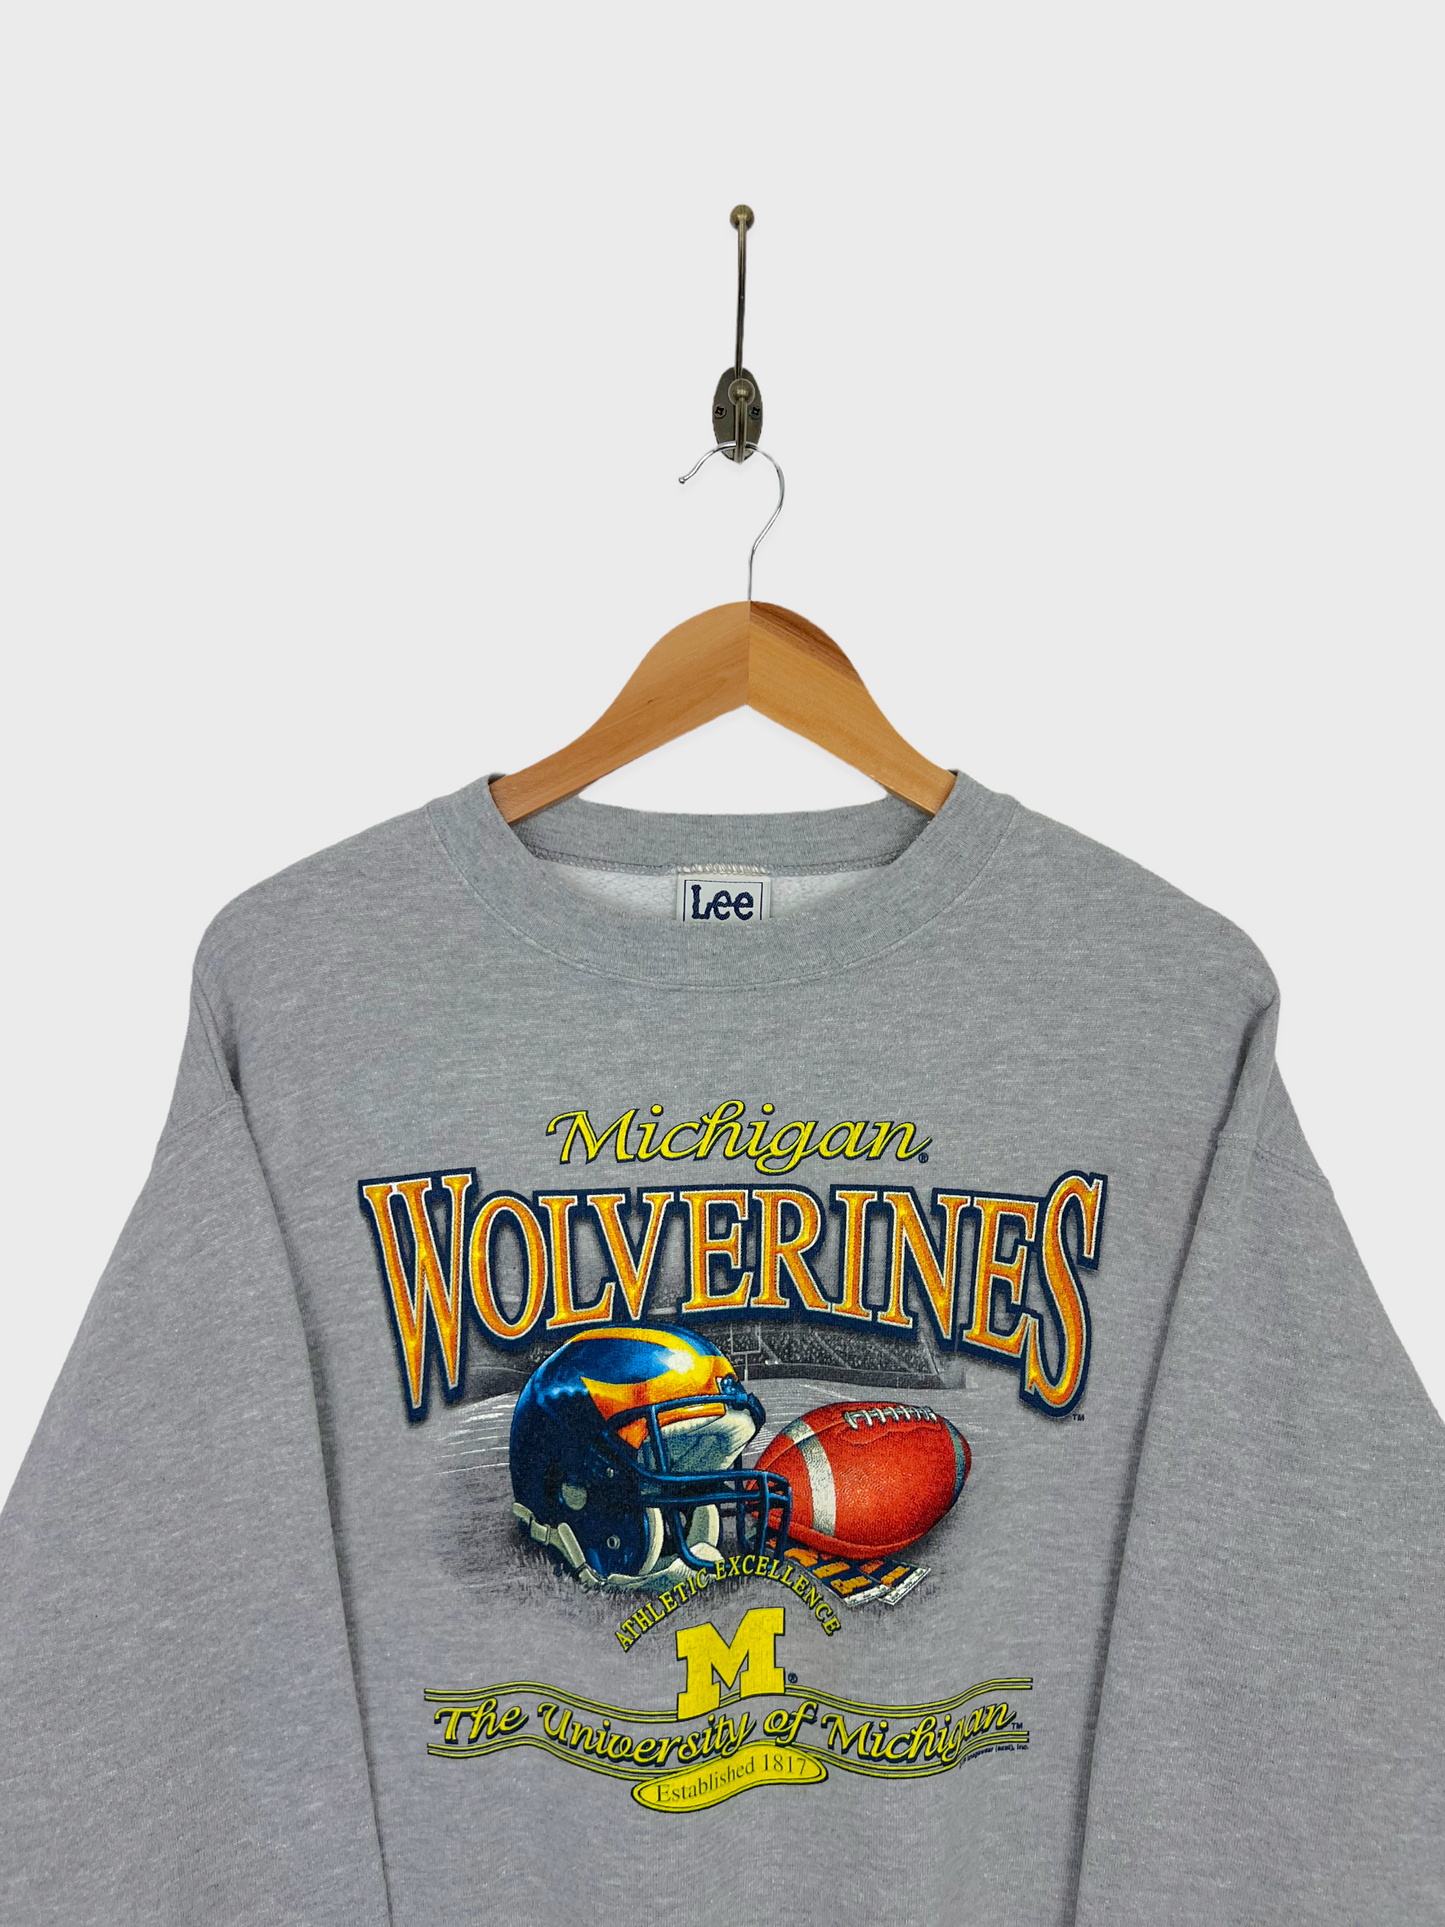 90's Michigan Wolverines Graphic Vintage Sweatshirt Size 8